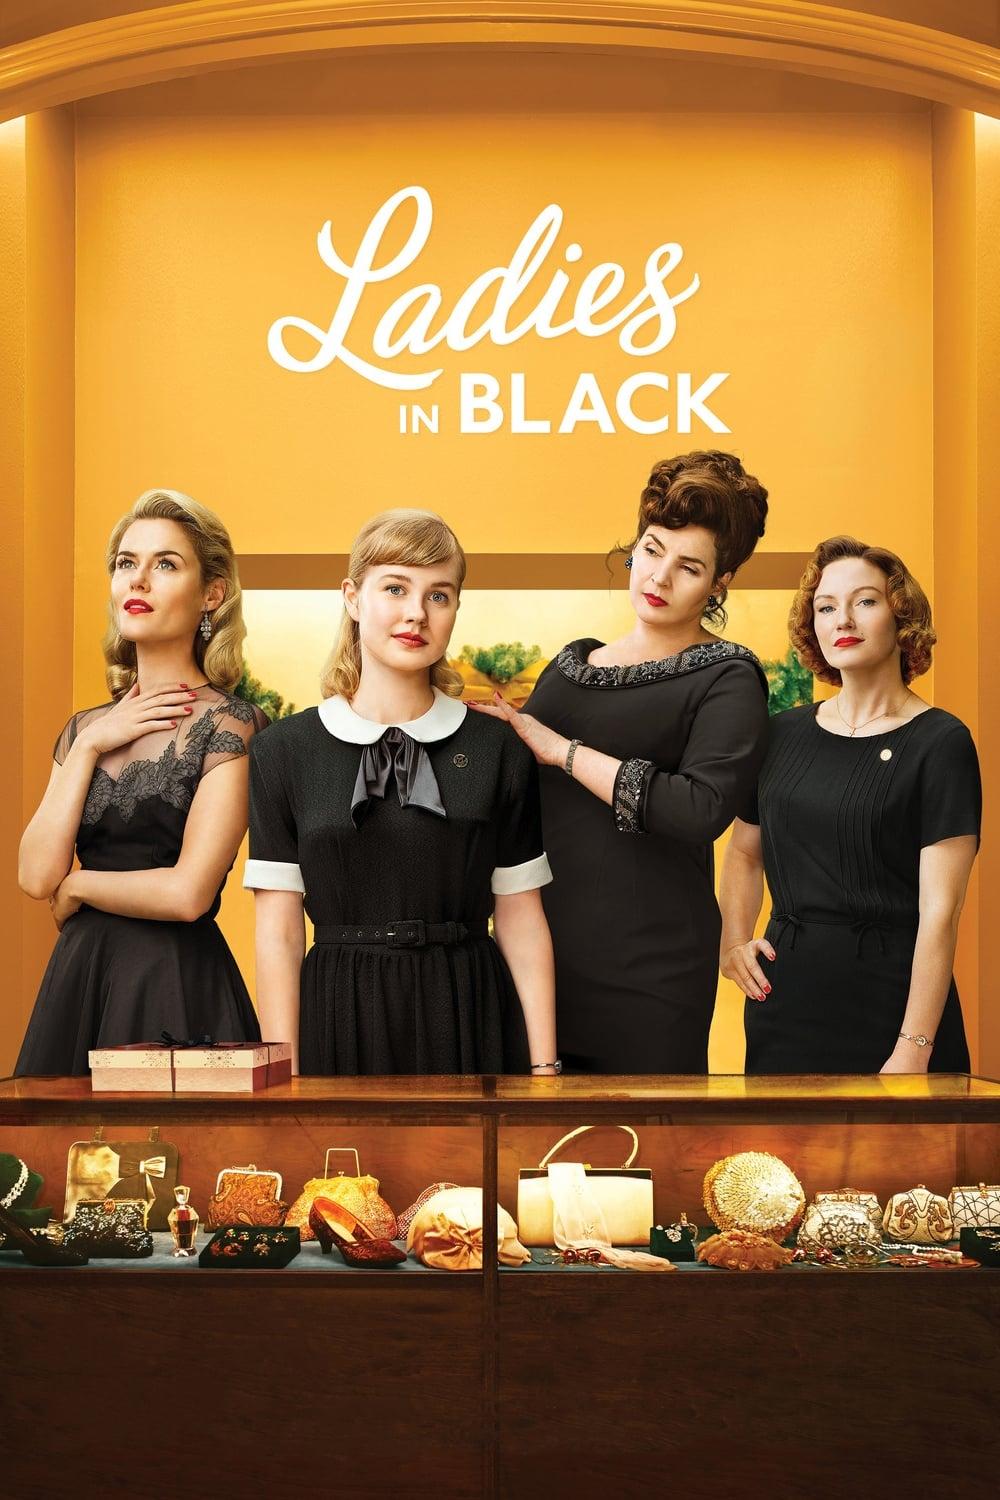 Ladies in Black poster